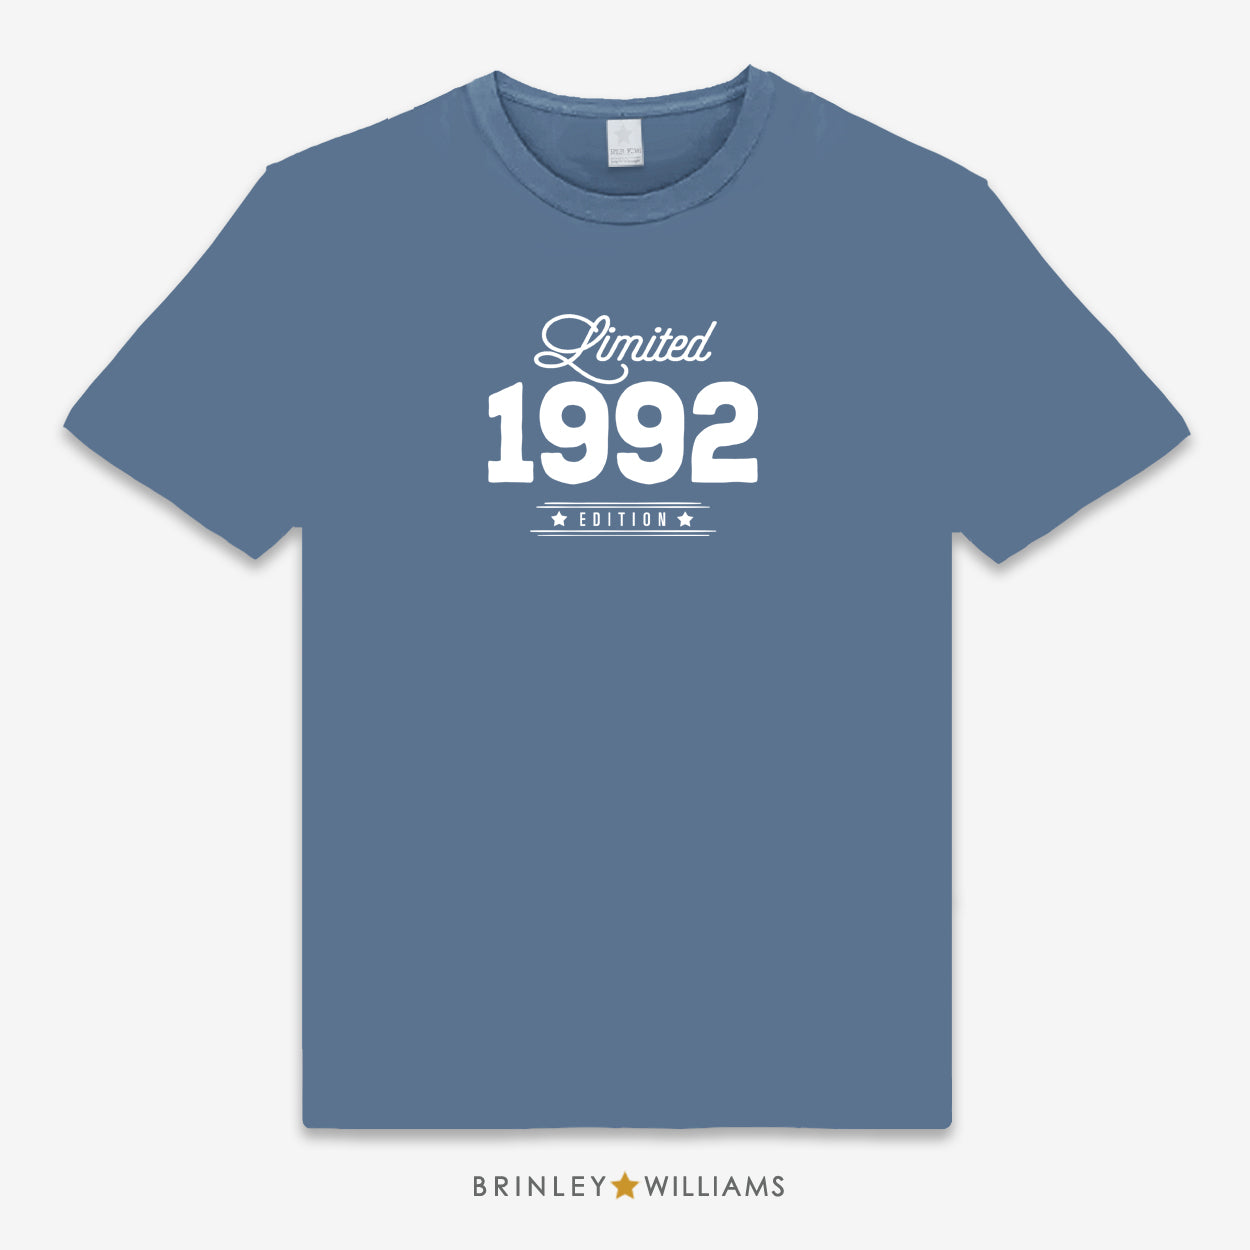 Limited Edition Personalised Year Unisex Classic T-shirt - Indigo